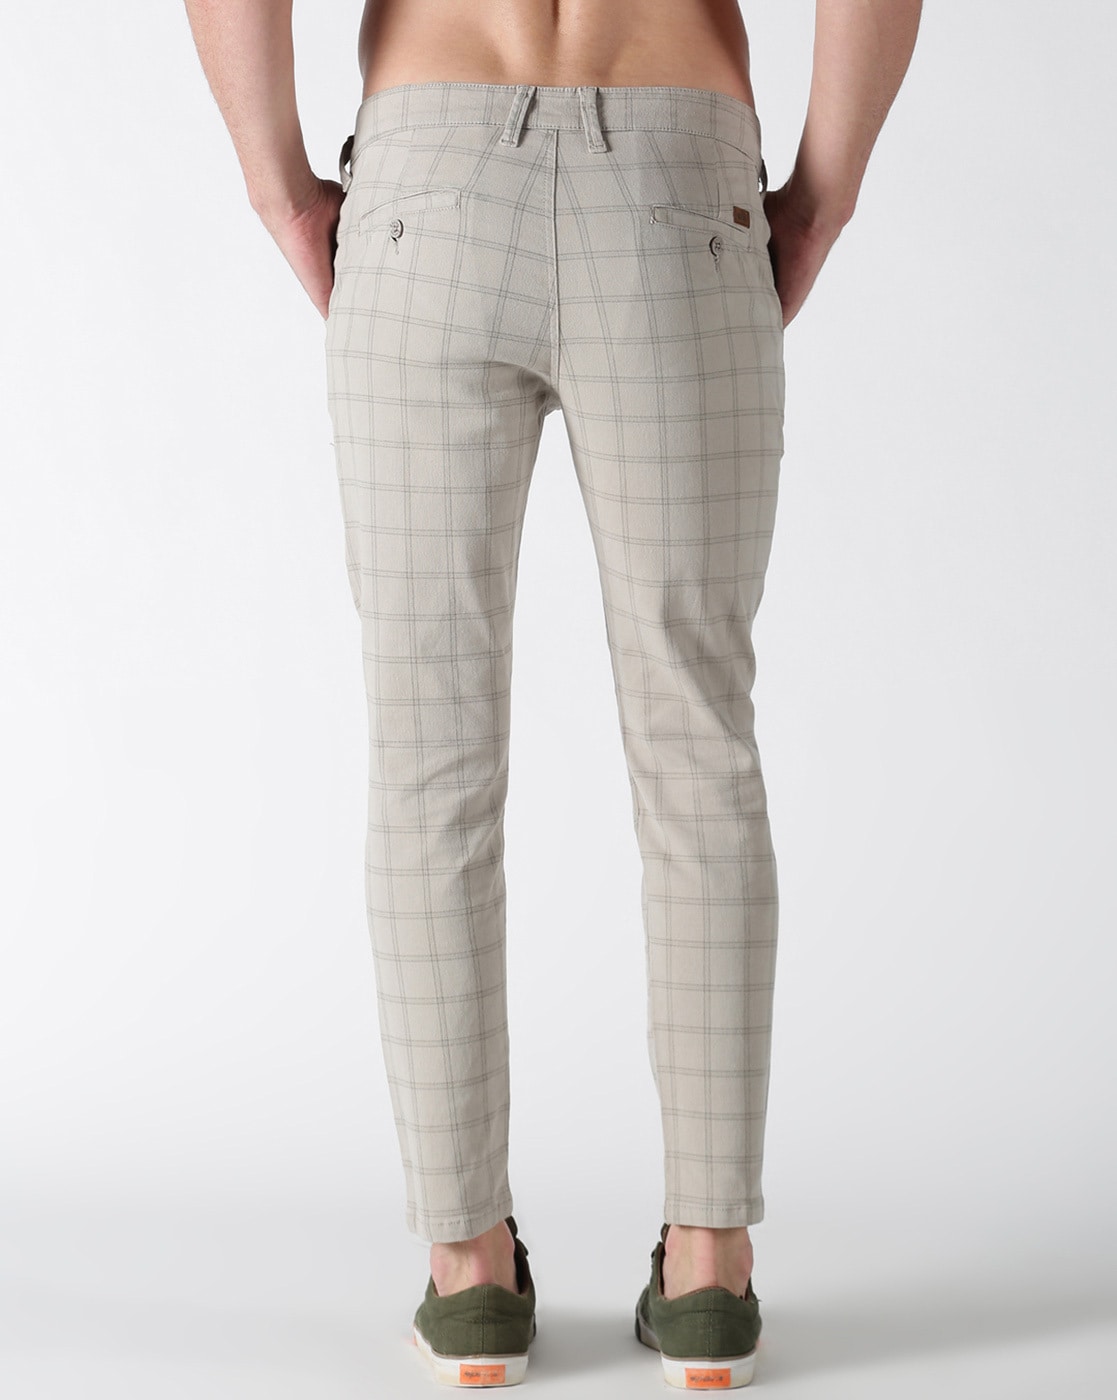 House of Cavani | Men's Cream Check Suit Trouser | Suit Direct